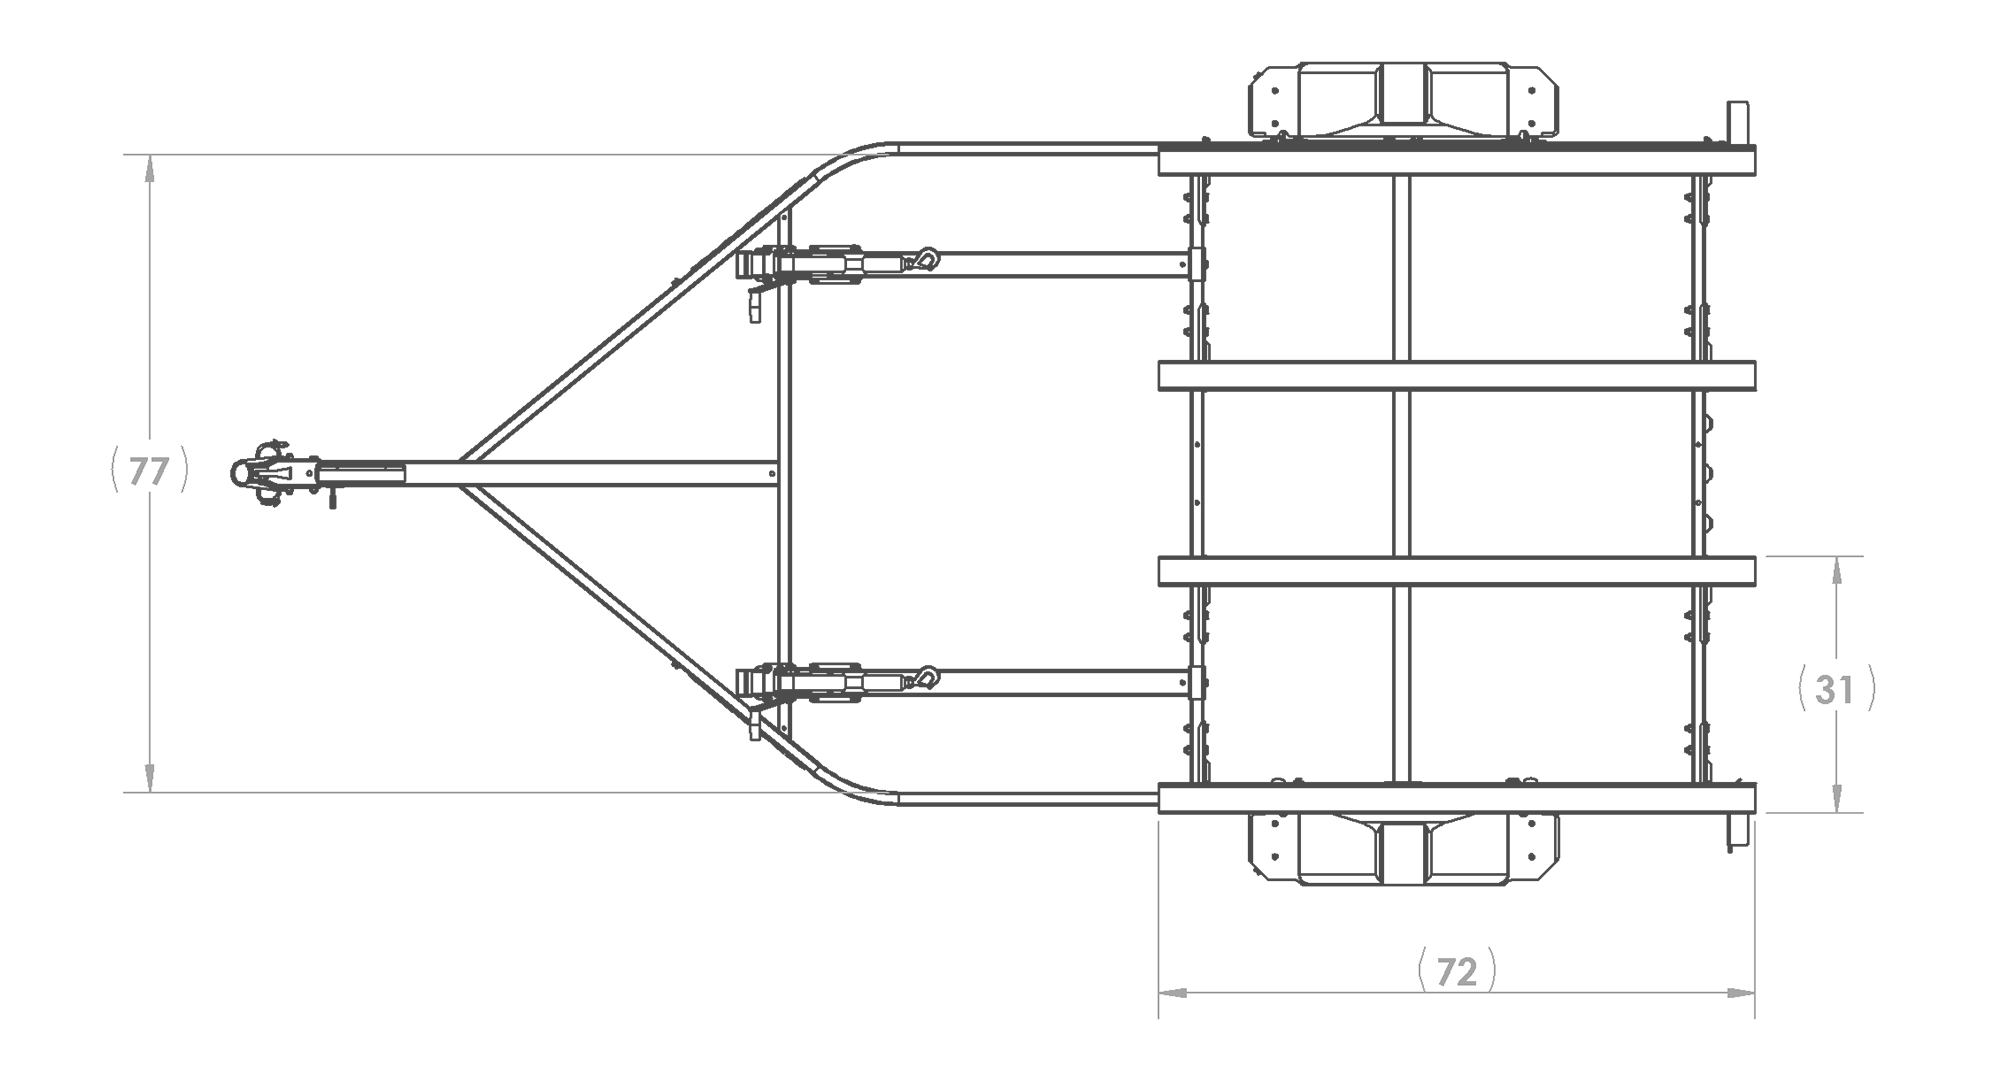 Karavan Trailer's Double Watercraft Steel Trailer w/Step Fender, model number WC-2200-84-S, Top View Measurement